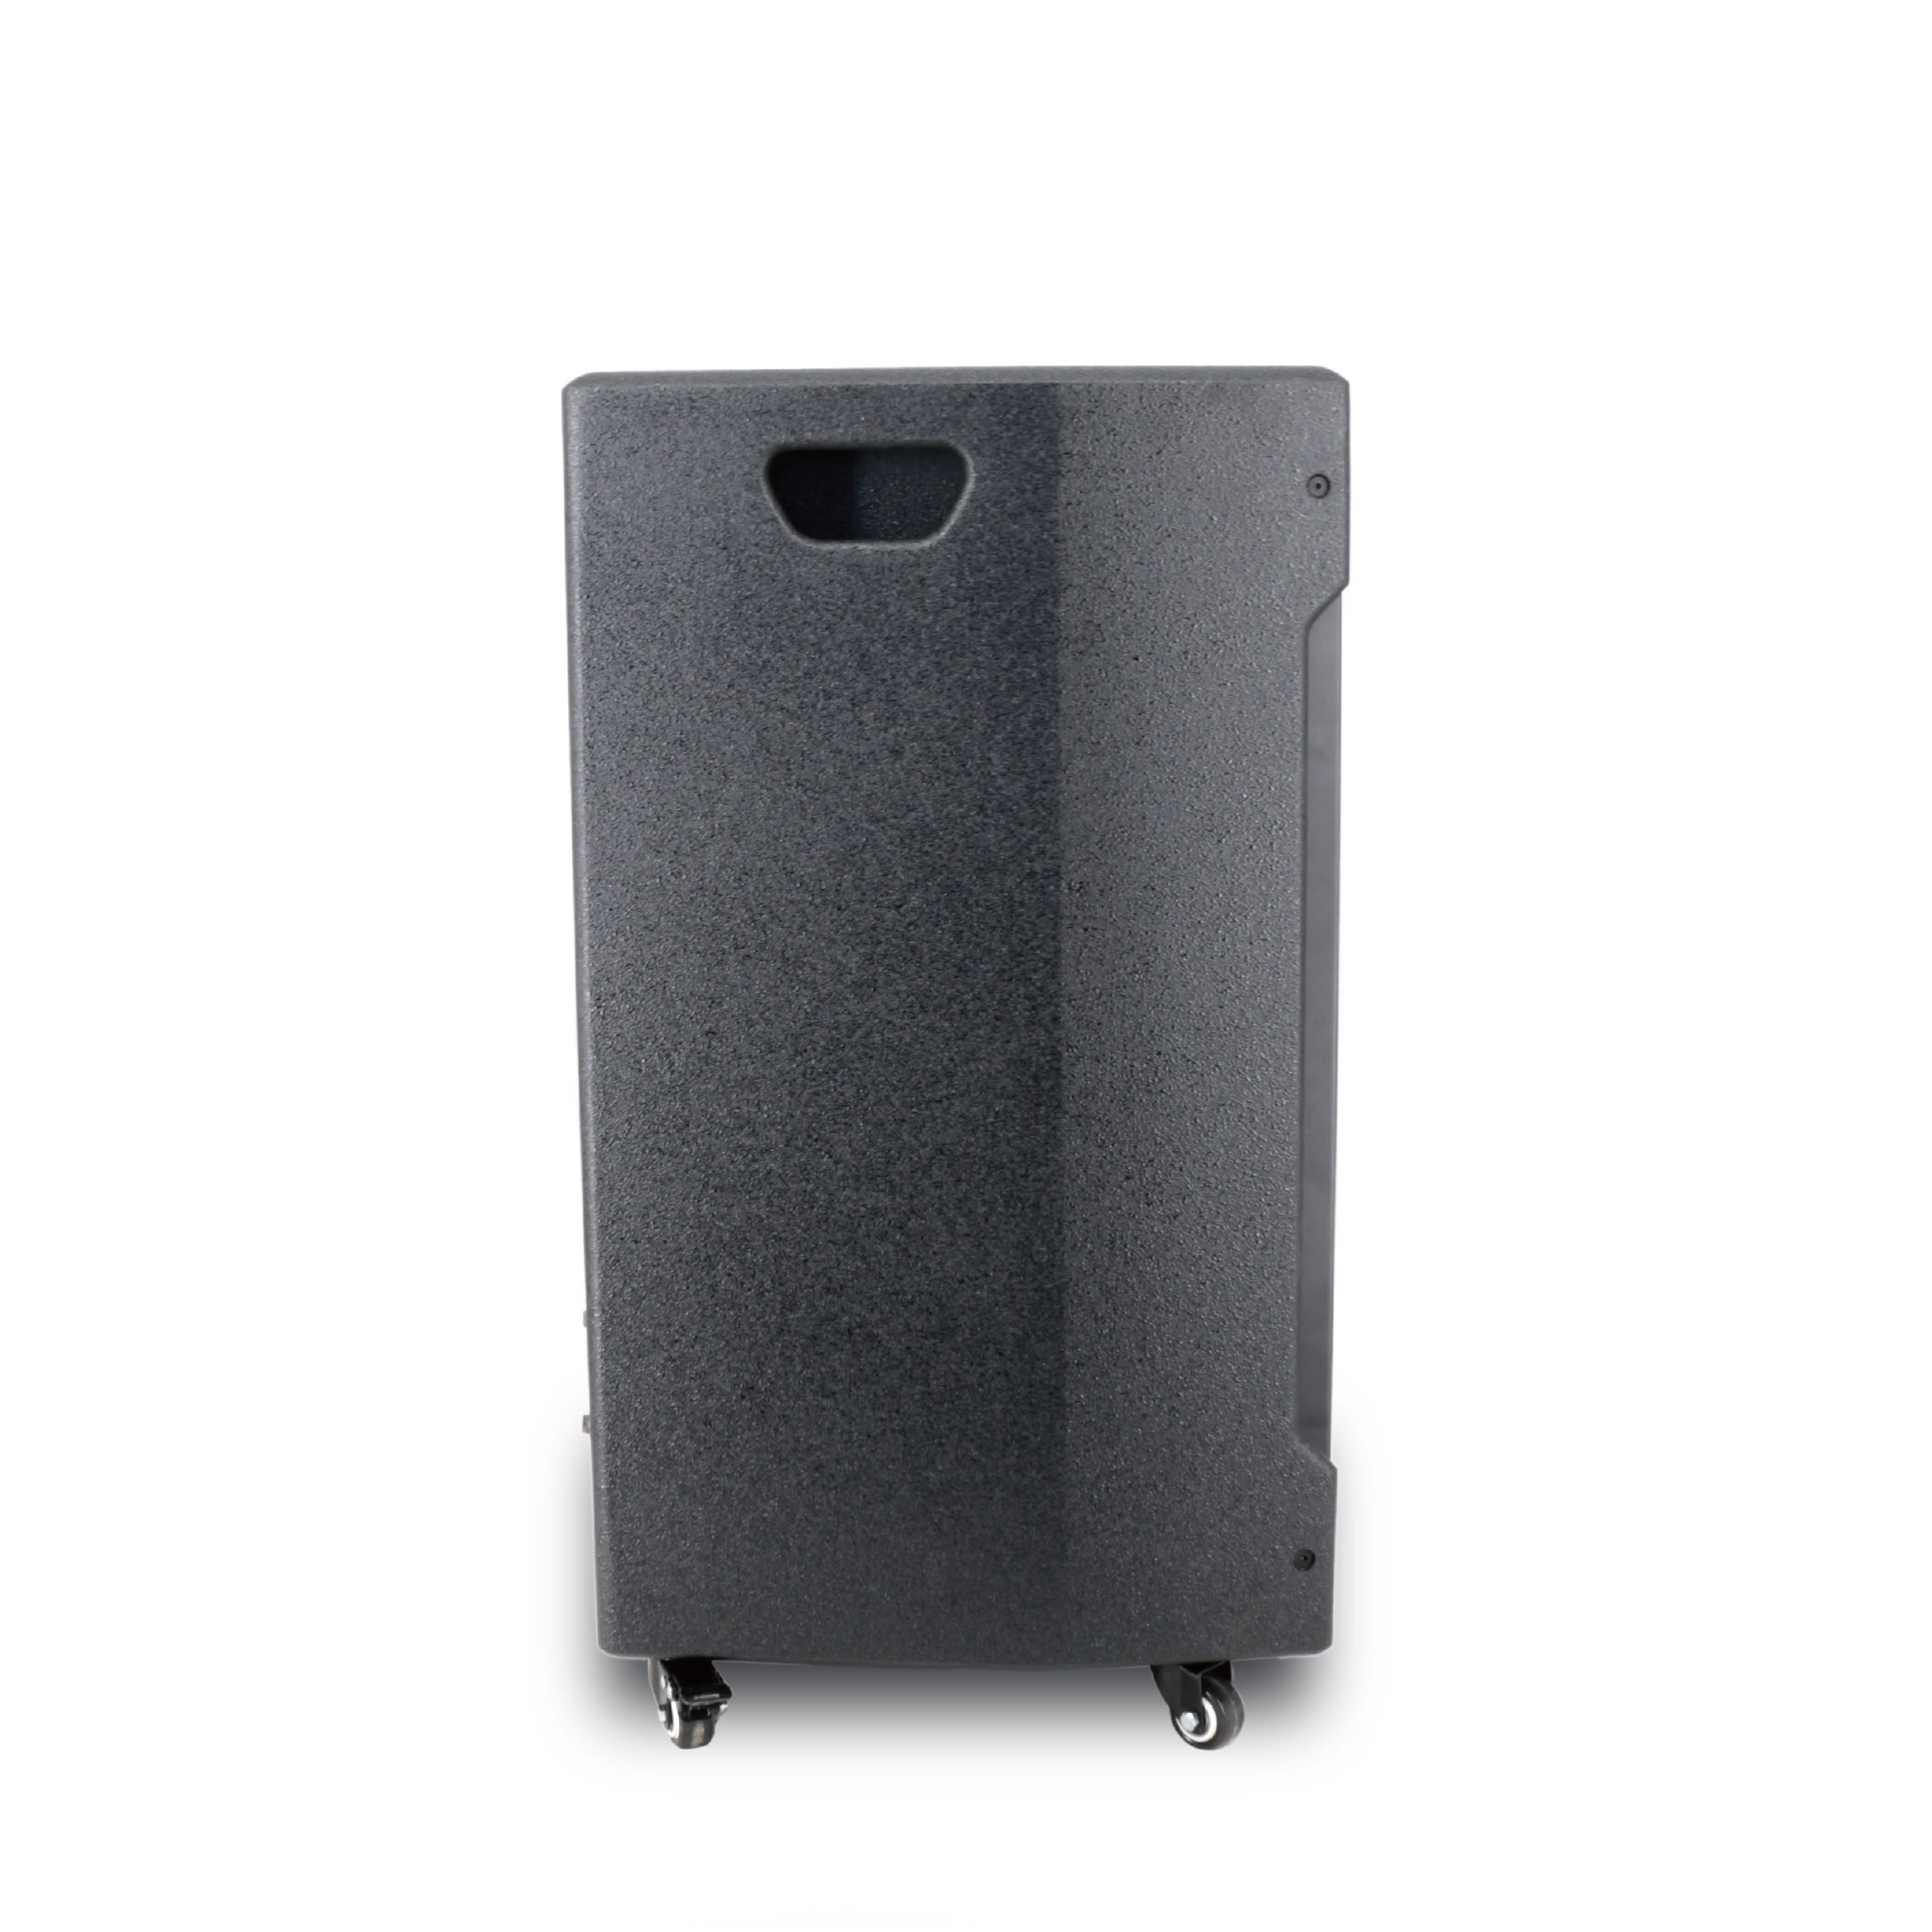 Portable Active Amplifier Wireless Rechargeable Waterproof Speaker